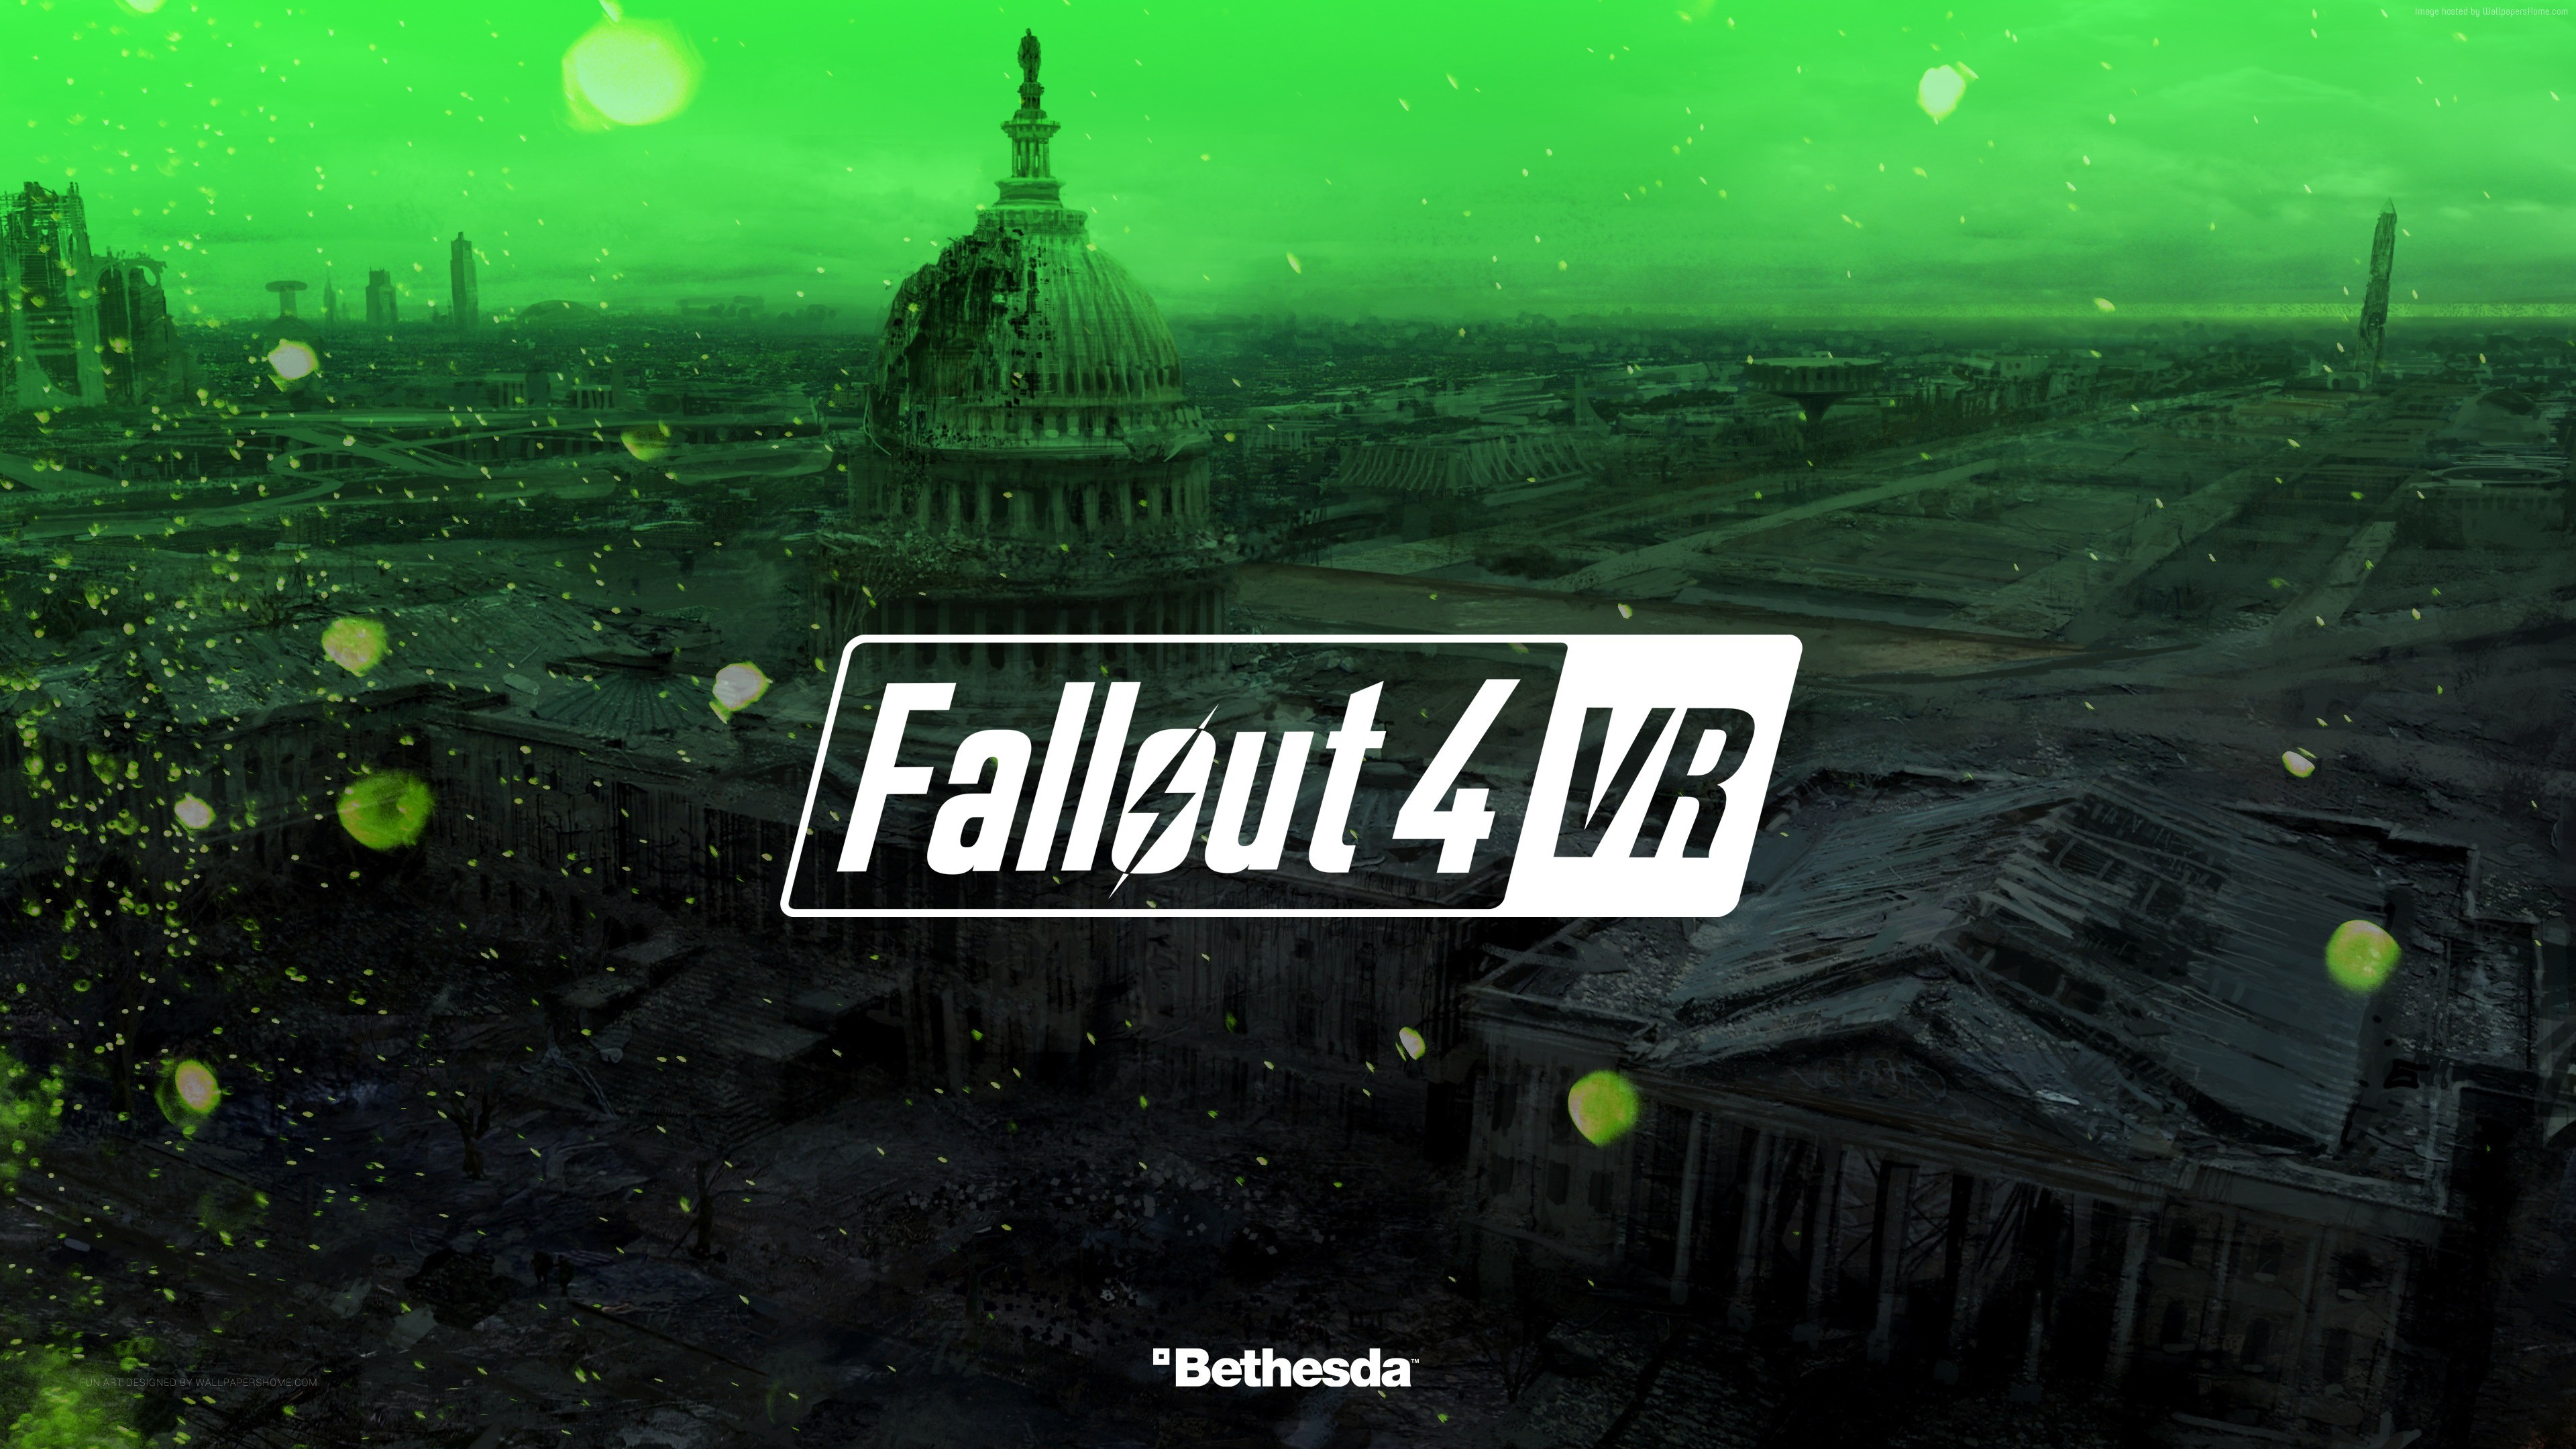 3840x2160 Fallout 4 VR 4K Wallpaper